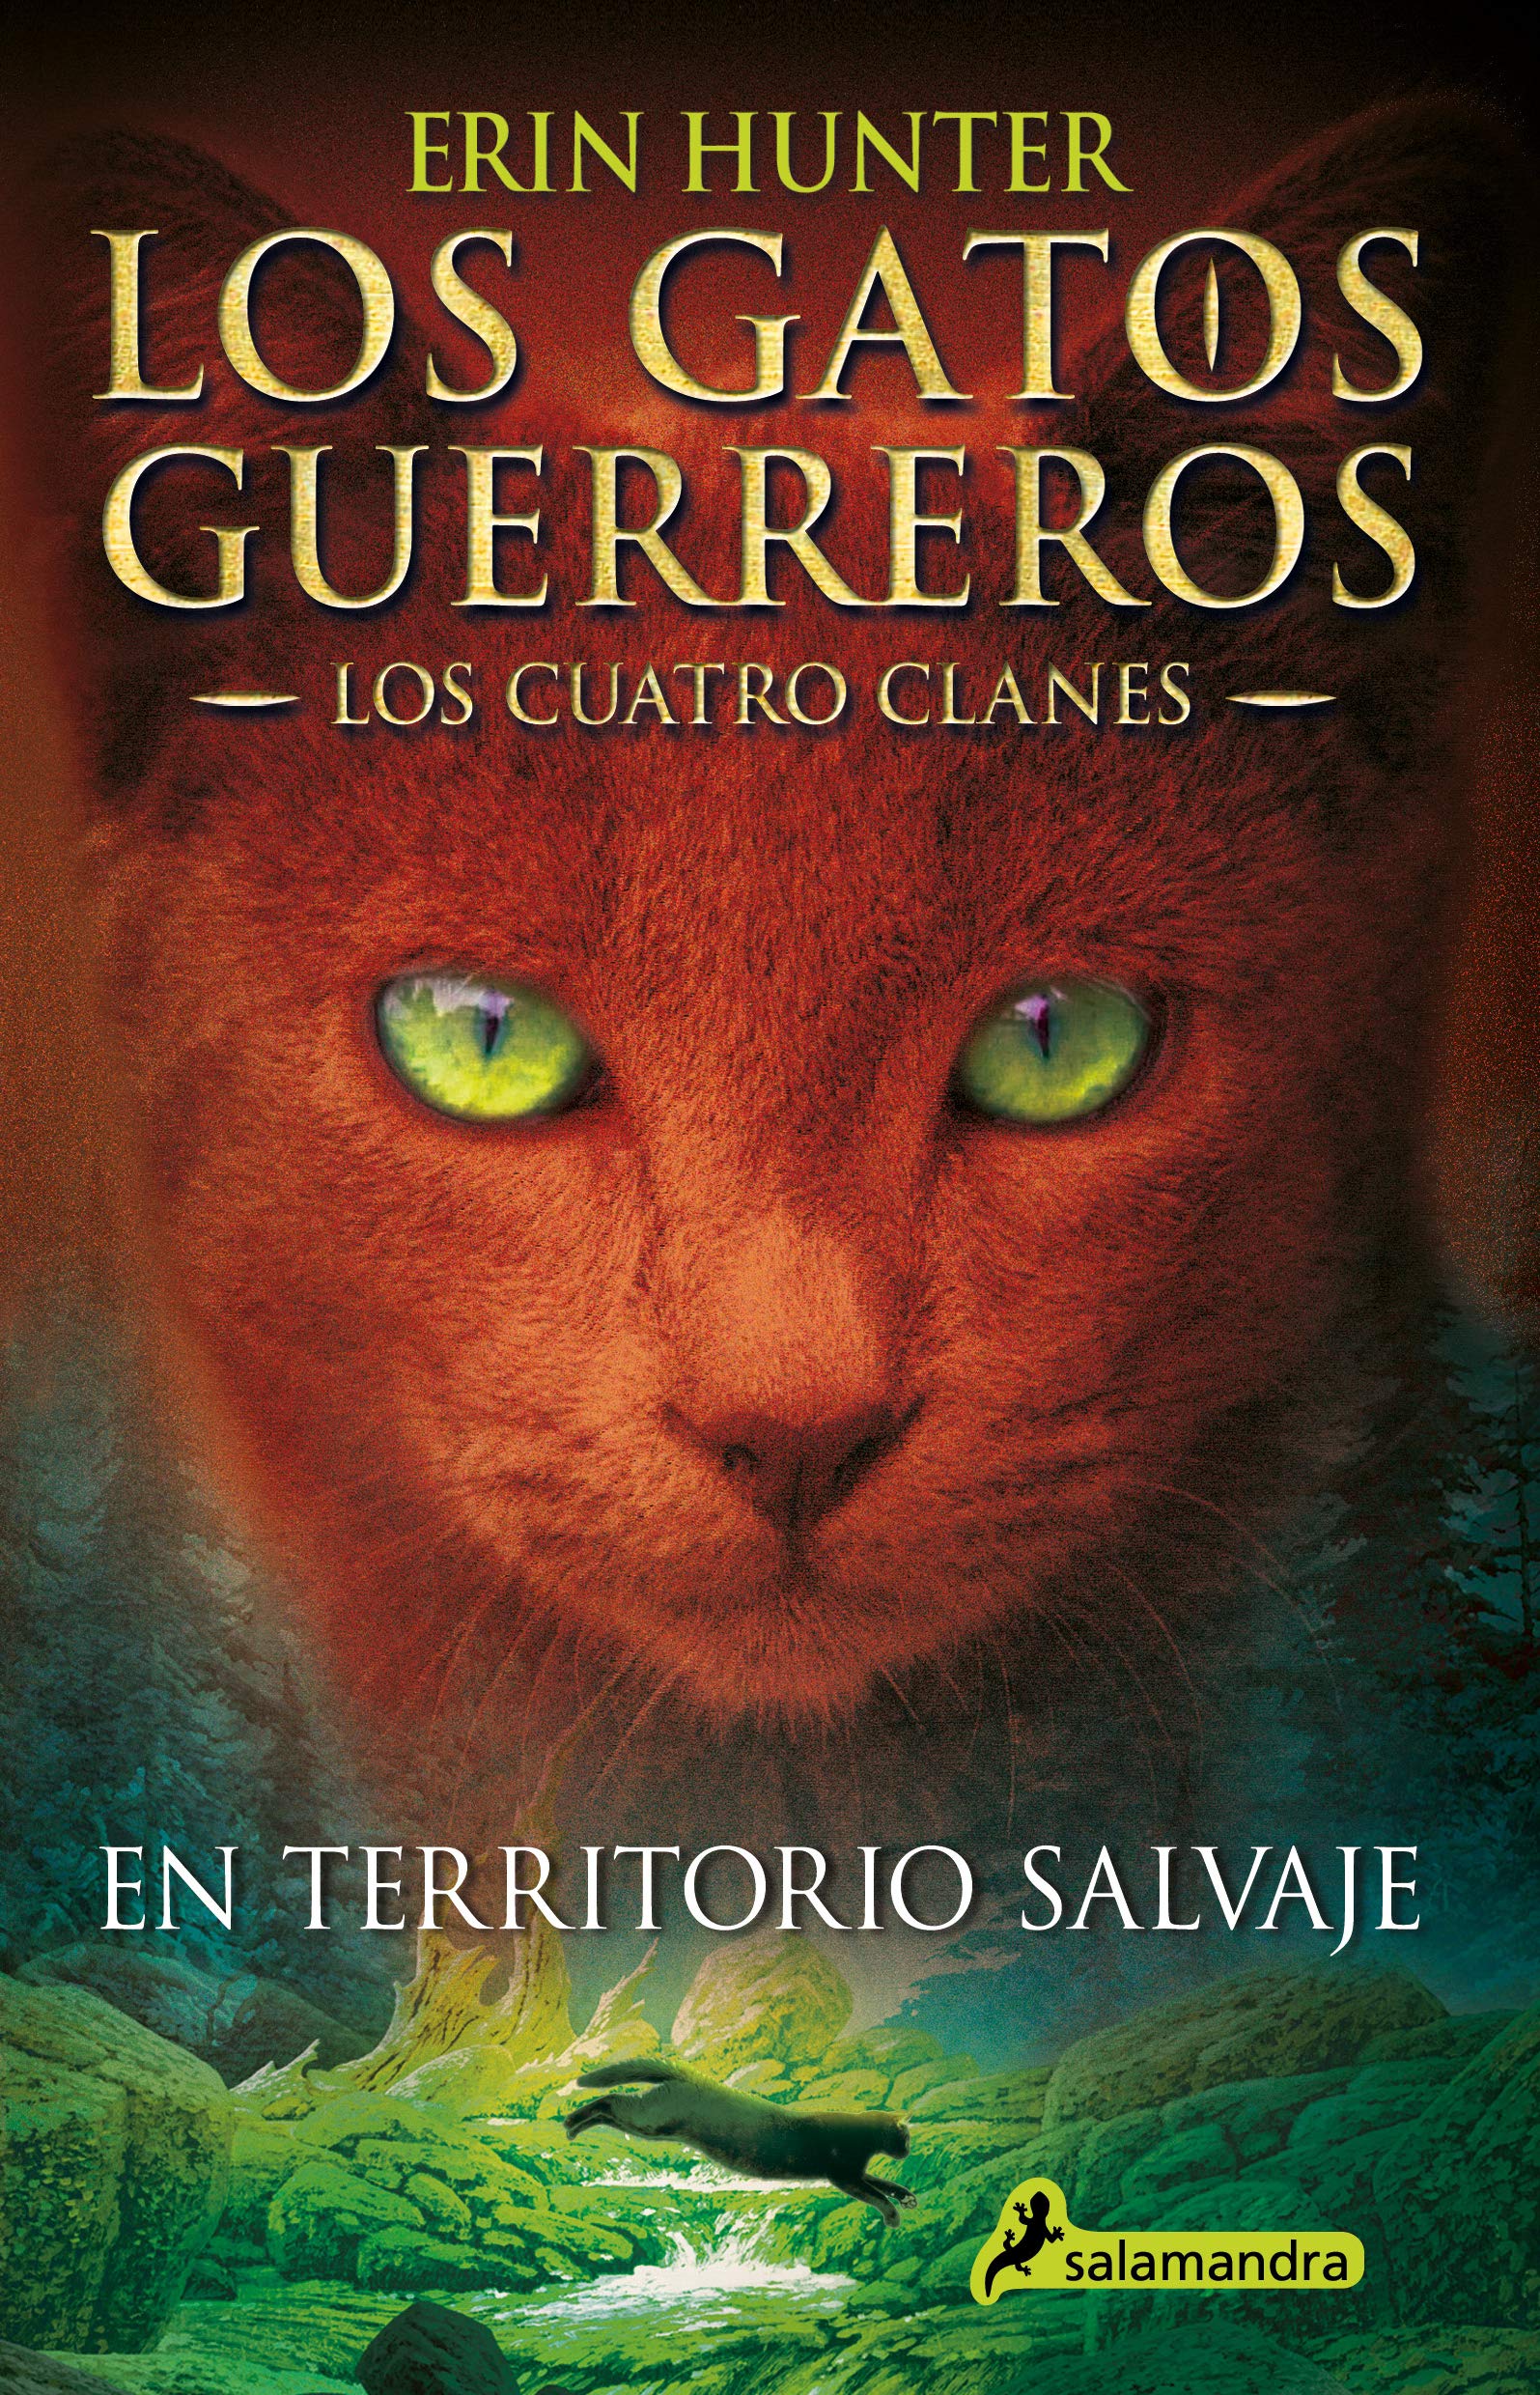 Libro: En Territorio Salvaje - Libro 1 de 6: Los Gatos Guerreros | Los Cuatro Clanes por Erin Hunter